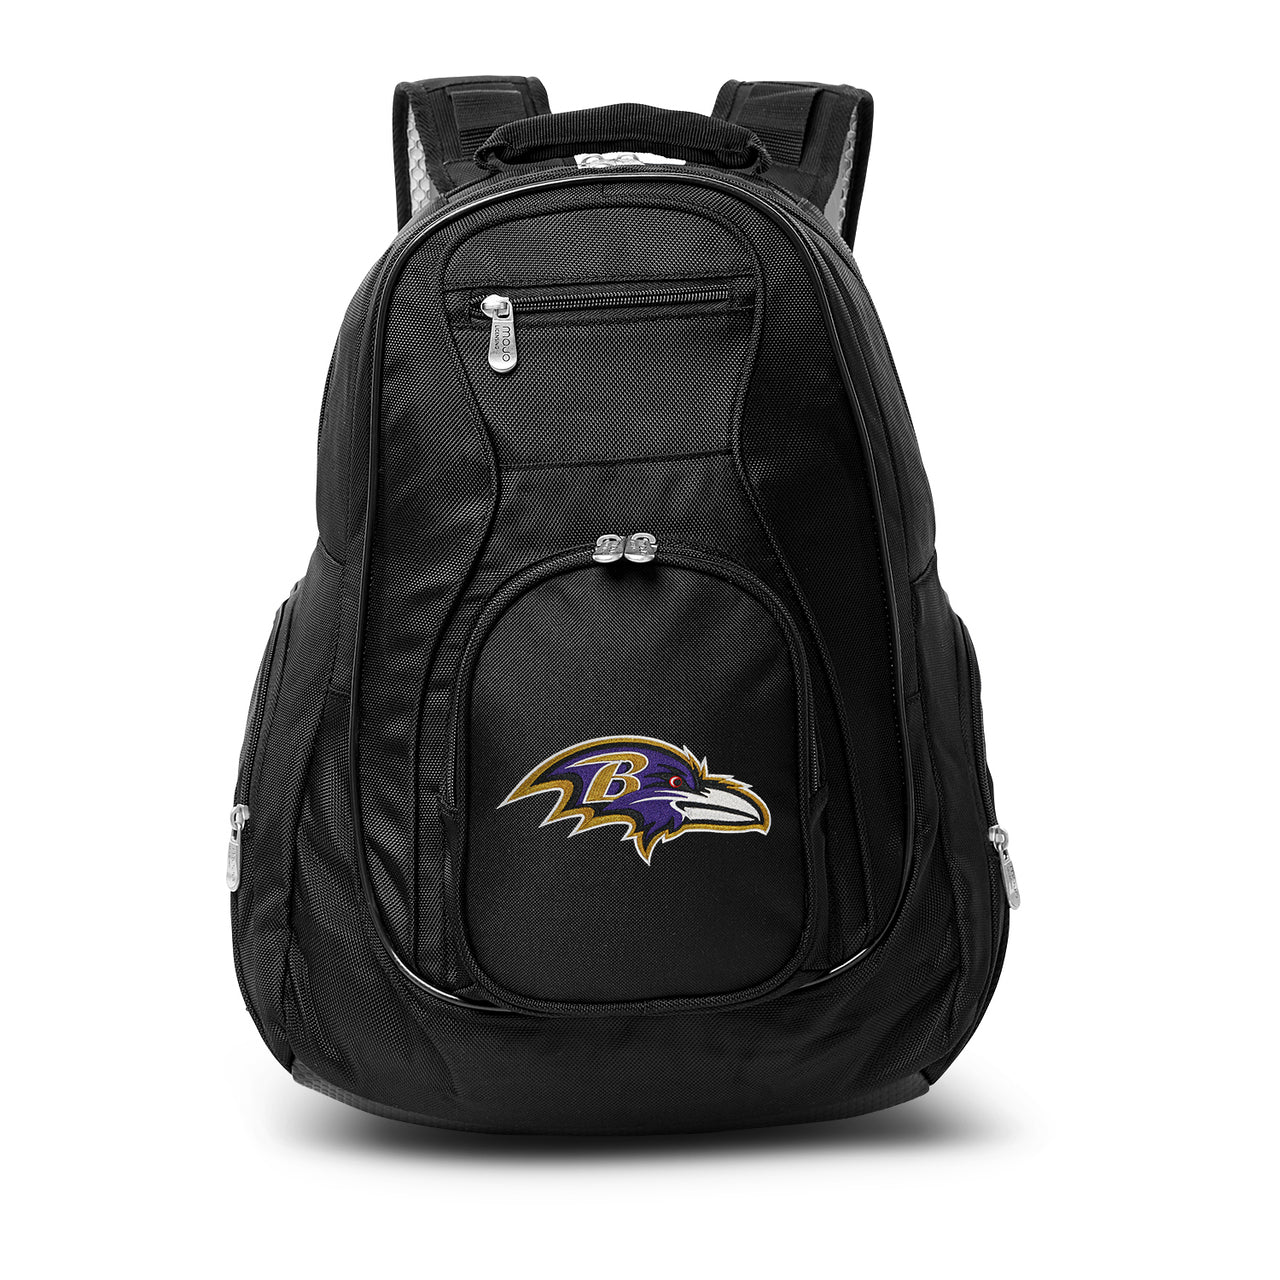 Ravens Backpack | Baltimore Ravens Laptop Backpack- Black